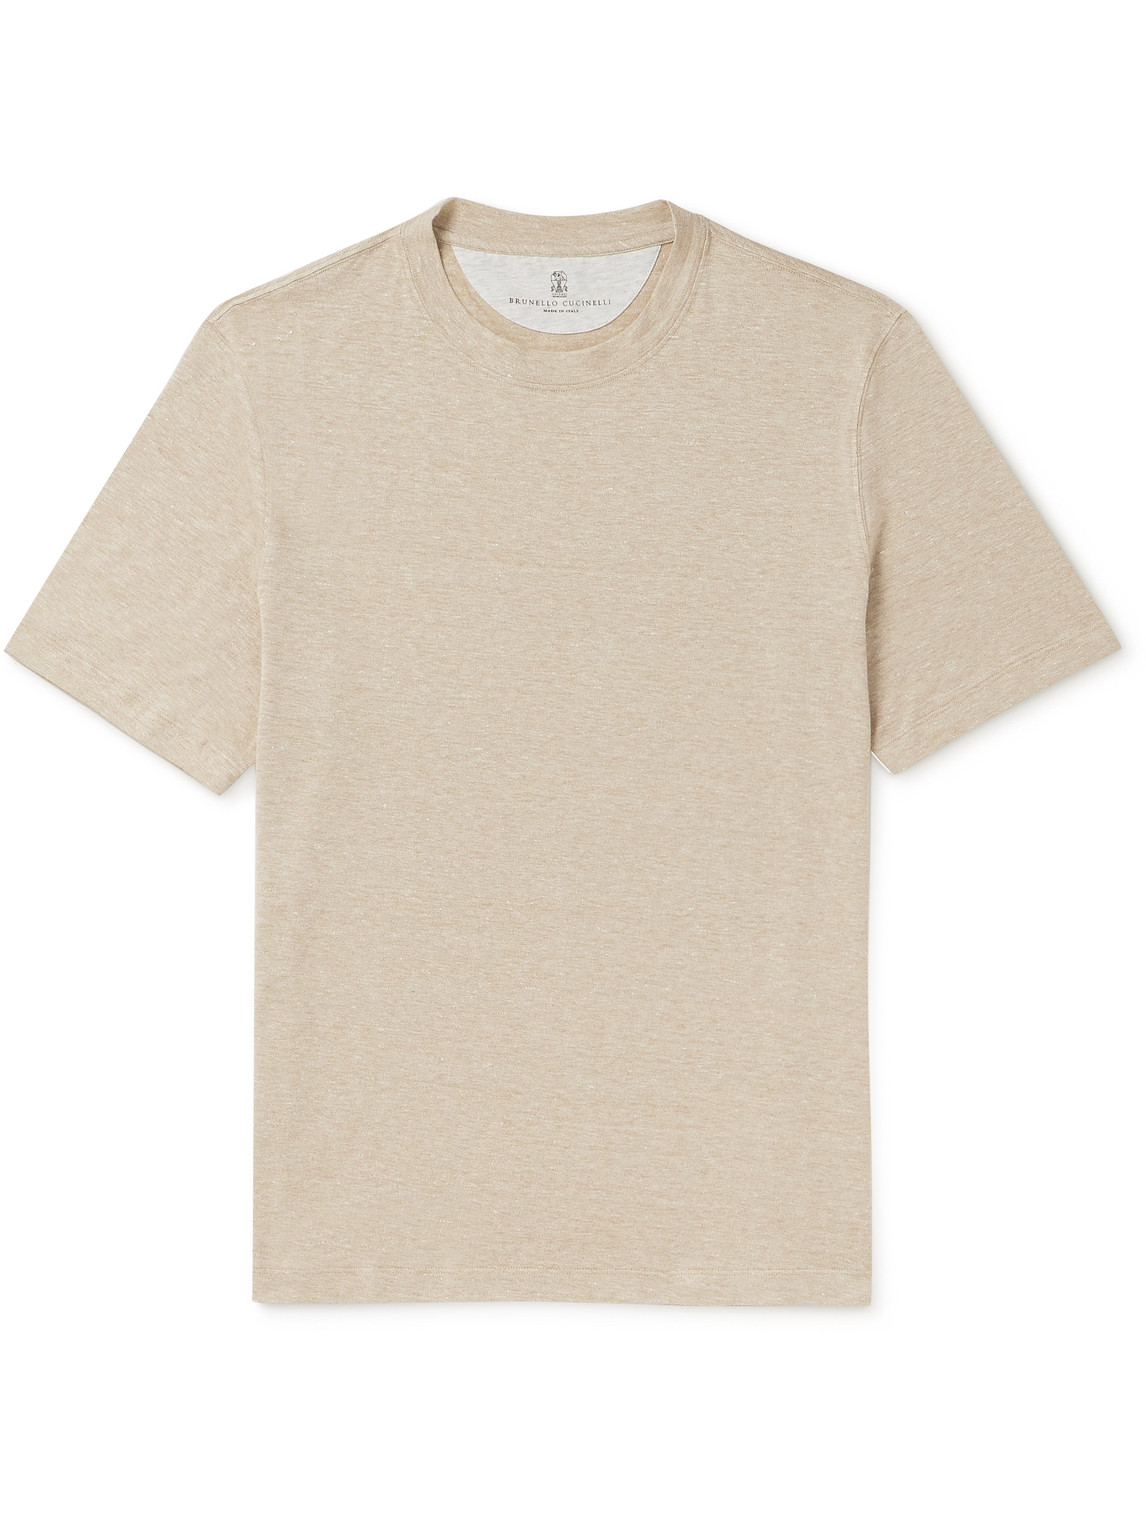 Brunello Cucinelli - Slub Linen and Cotton-Blend Jersey T-Shirt - Men - Neutrals - M von Brunello Cucinelli